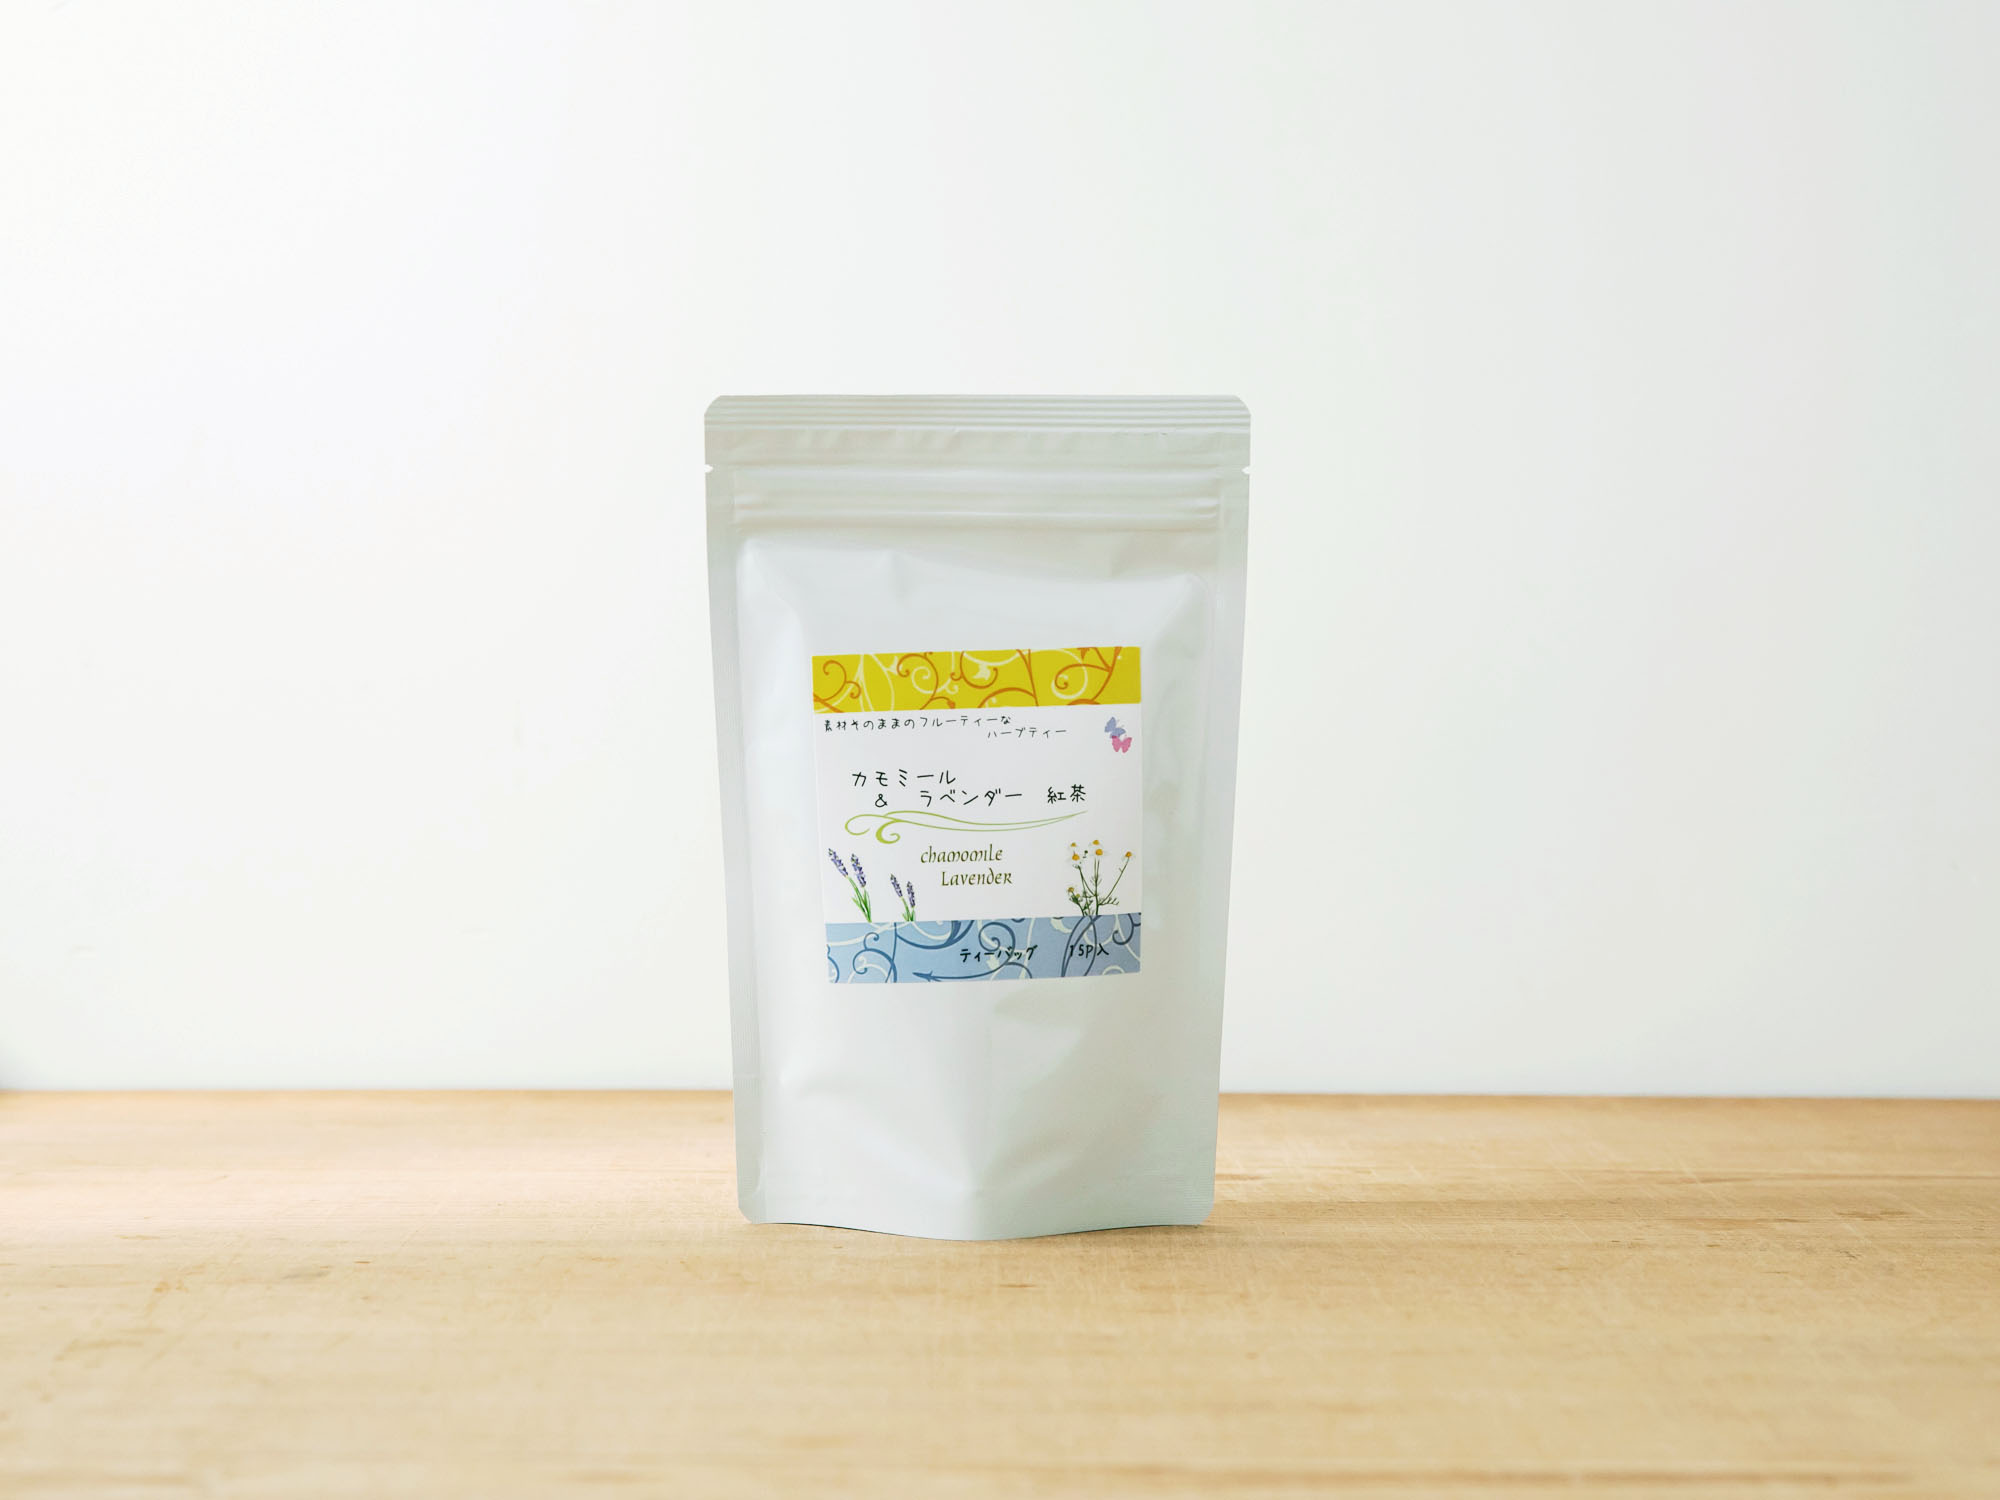 ヤマニ製茶 カモミール&ラベンダー 紅茶